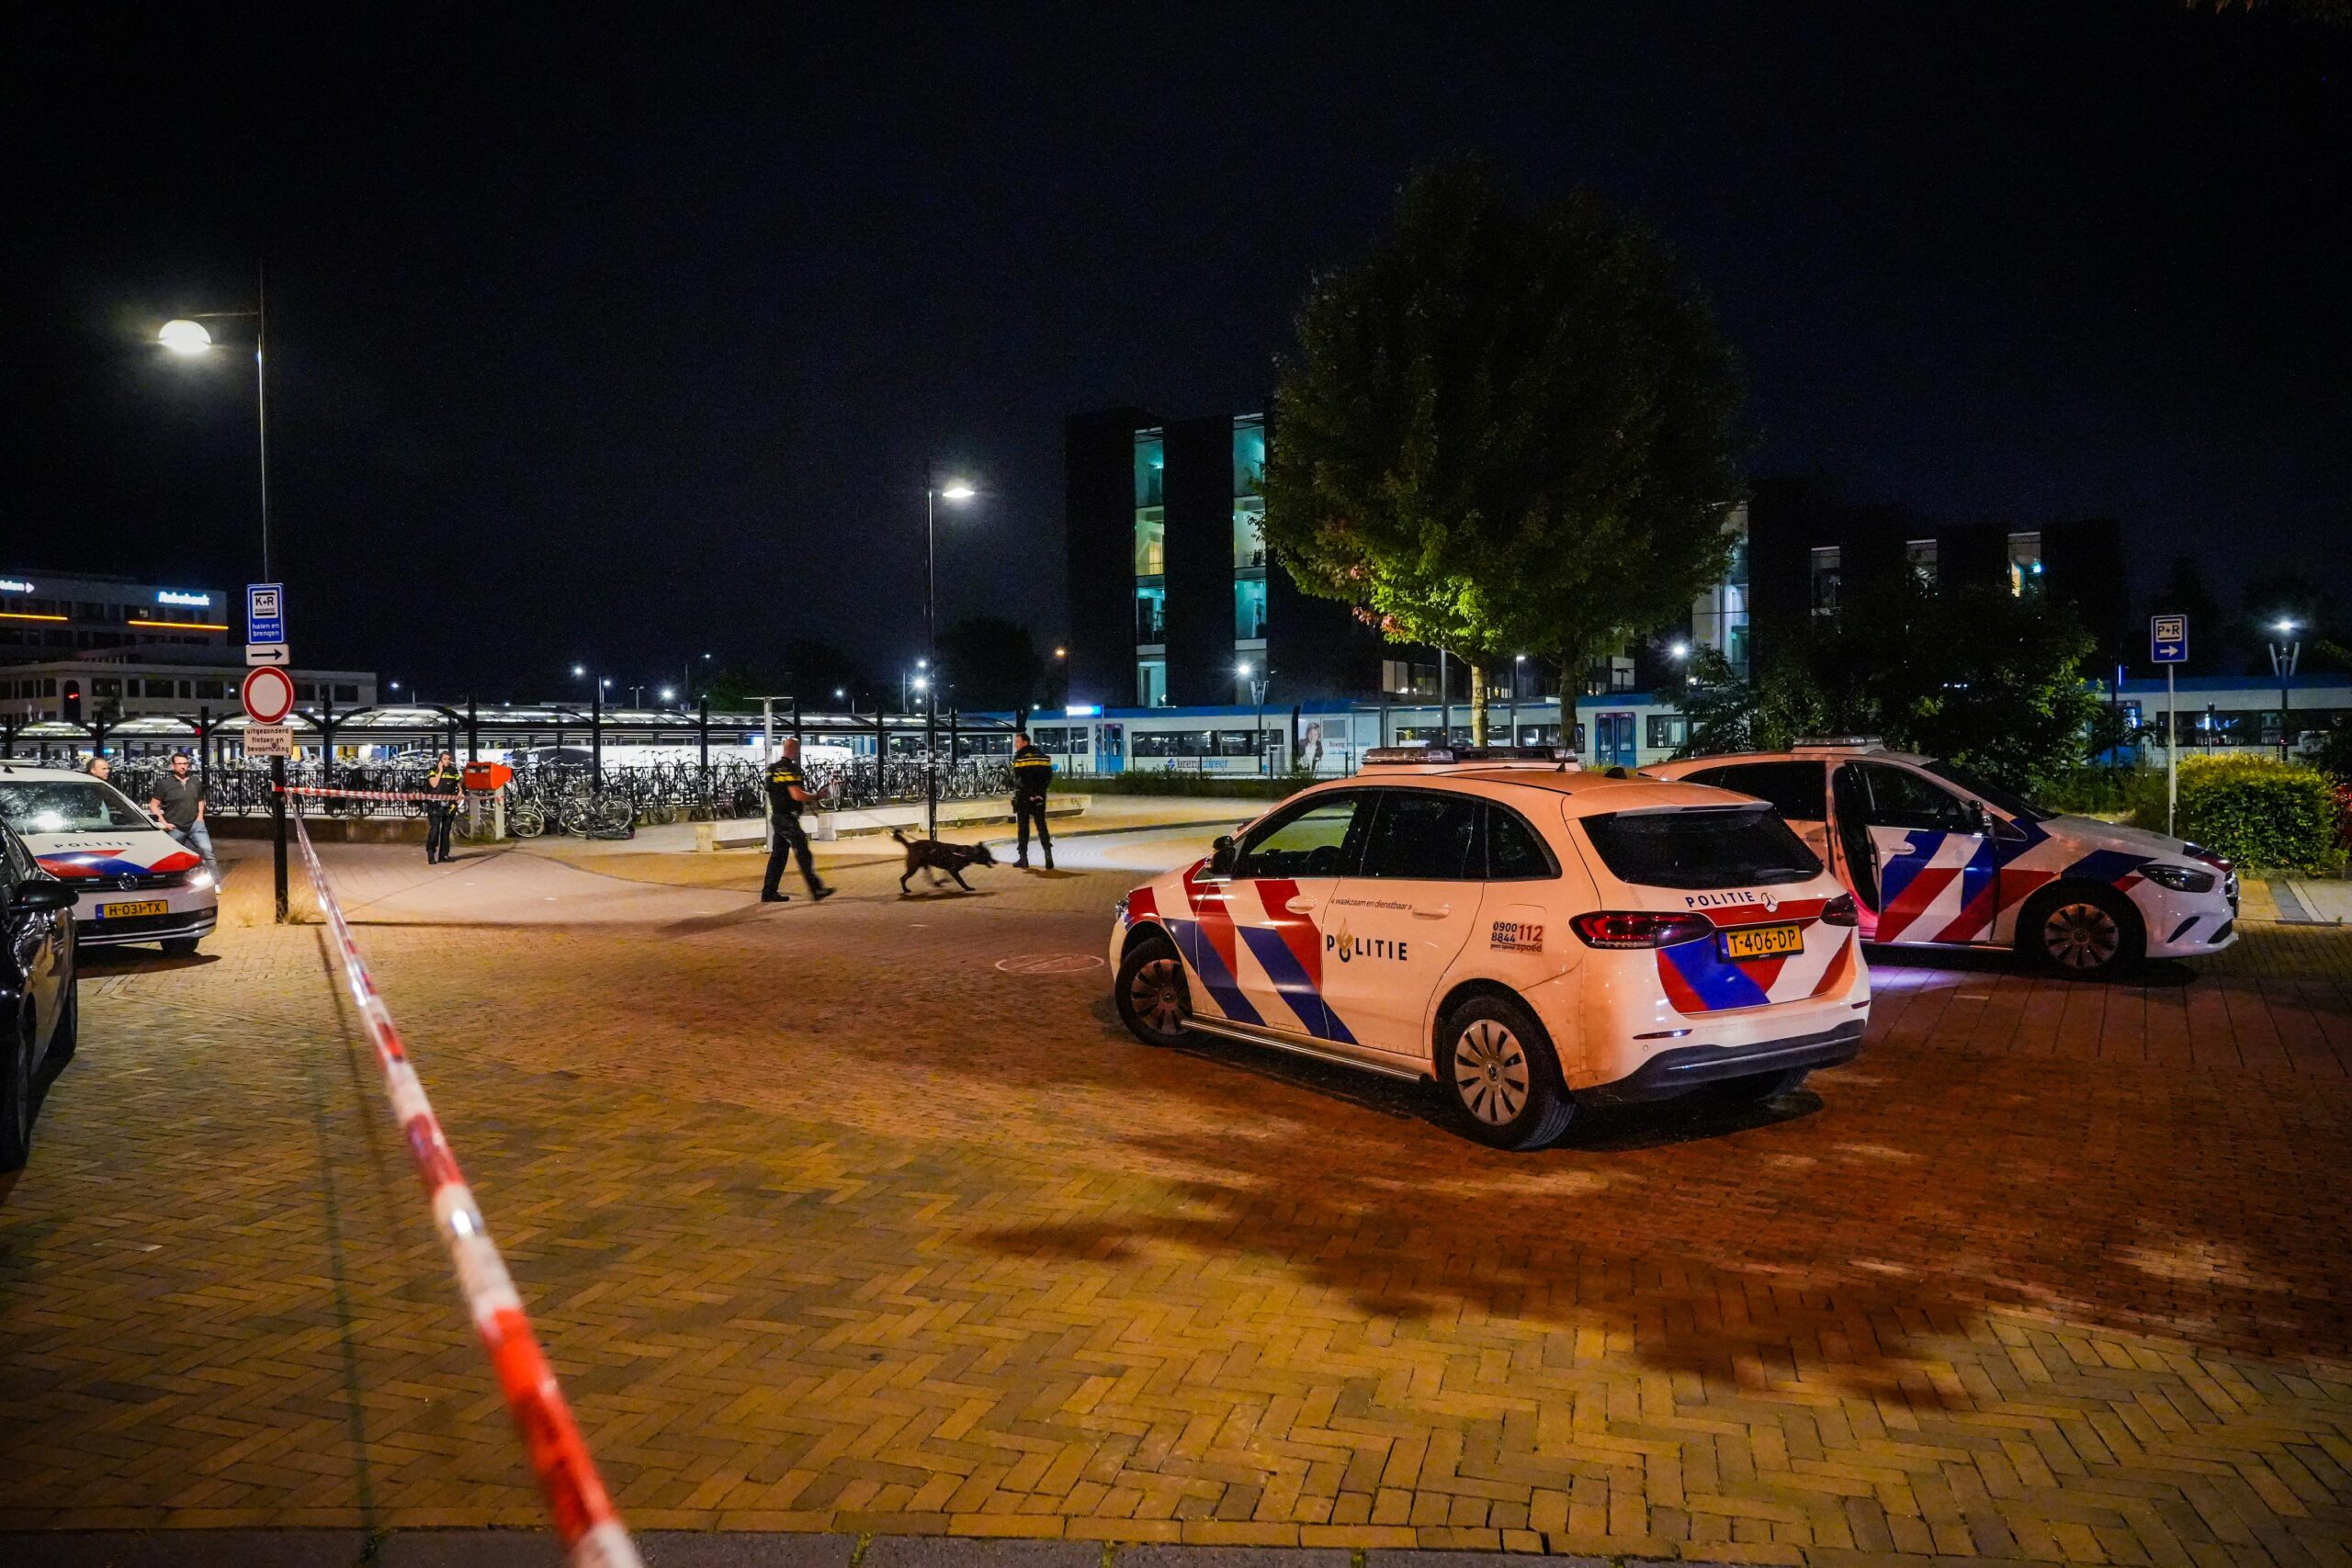 Station Doetinchem ontruimd na ‘dreiging’: politie neemt flessen wasbenzine en jas in beslag